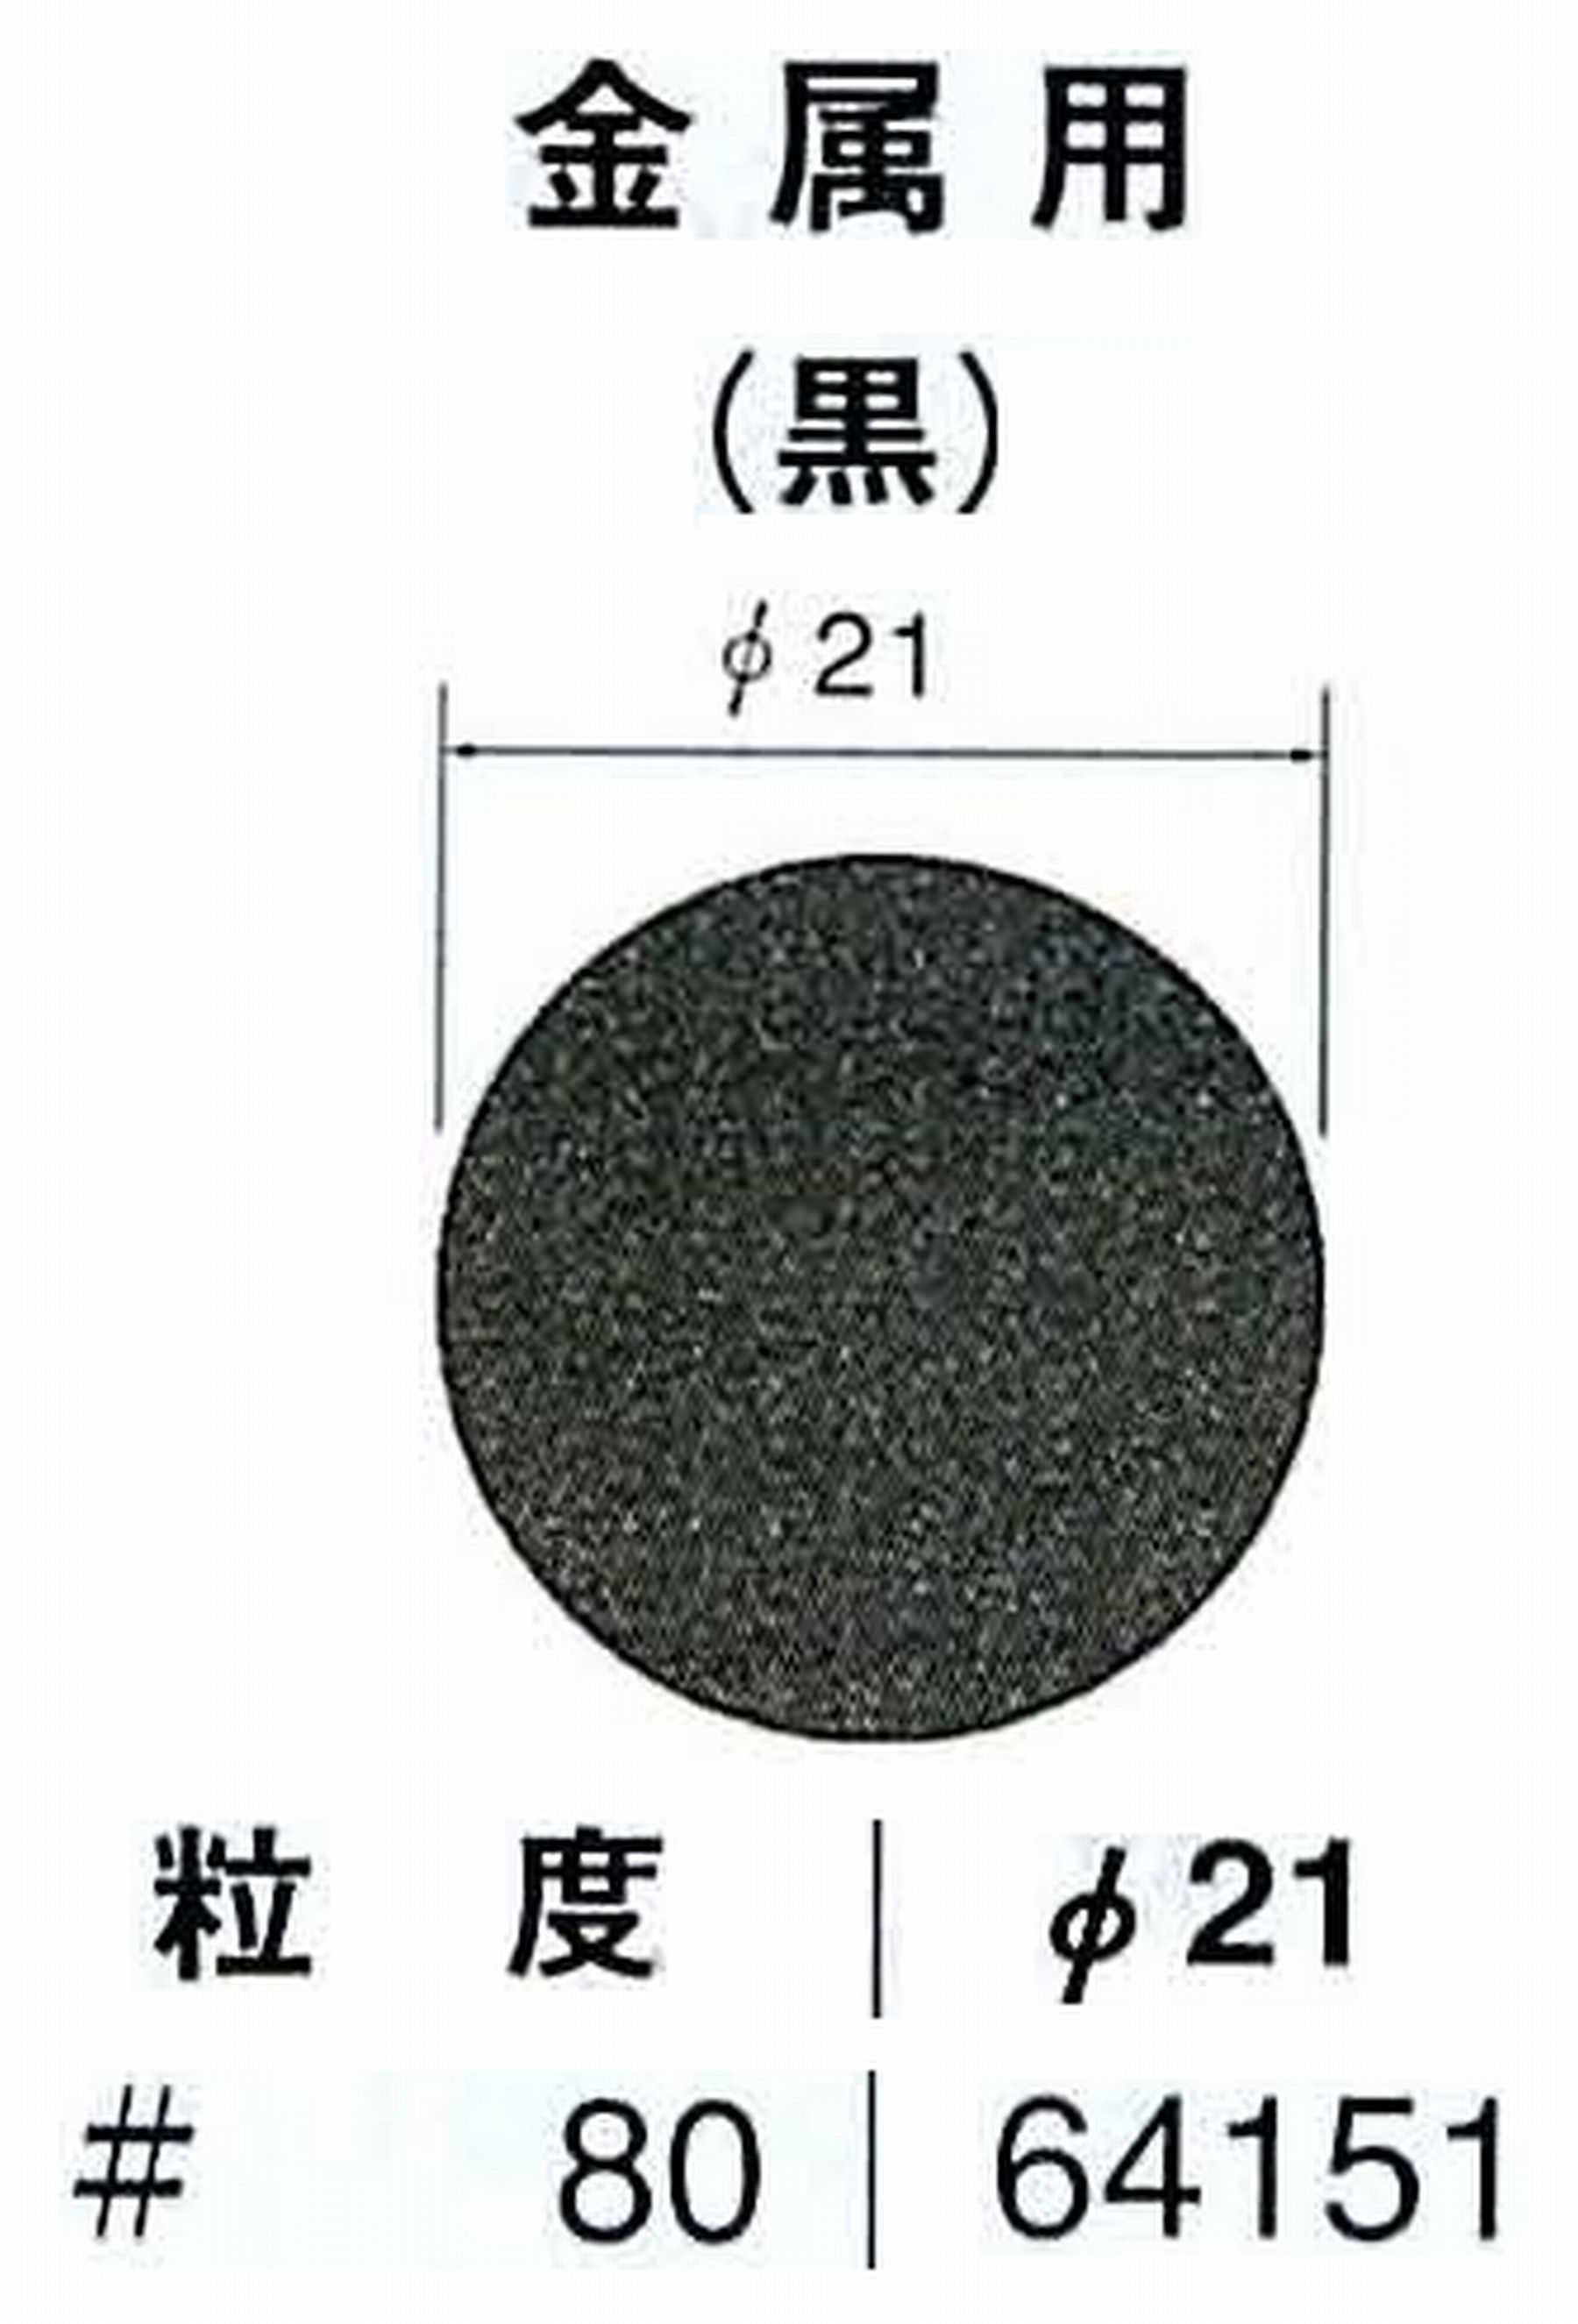 ナカニシ/NAKANISHI アングルグラインダ(電動・エアー) アングルアタッチメント専用工具 サンドペーパーディスク(紙基材タイプ)裏面のり処理 64151